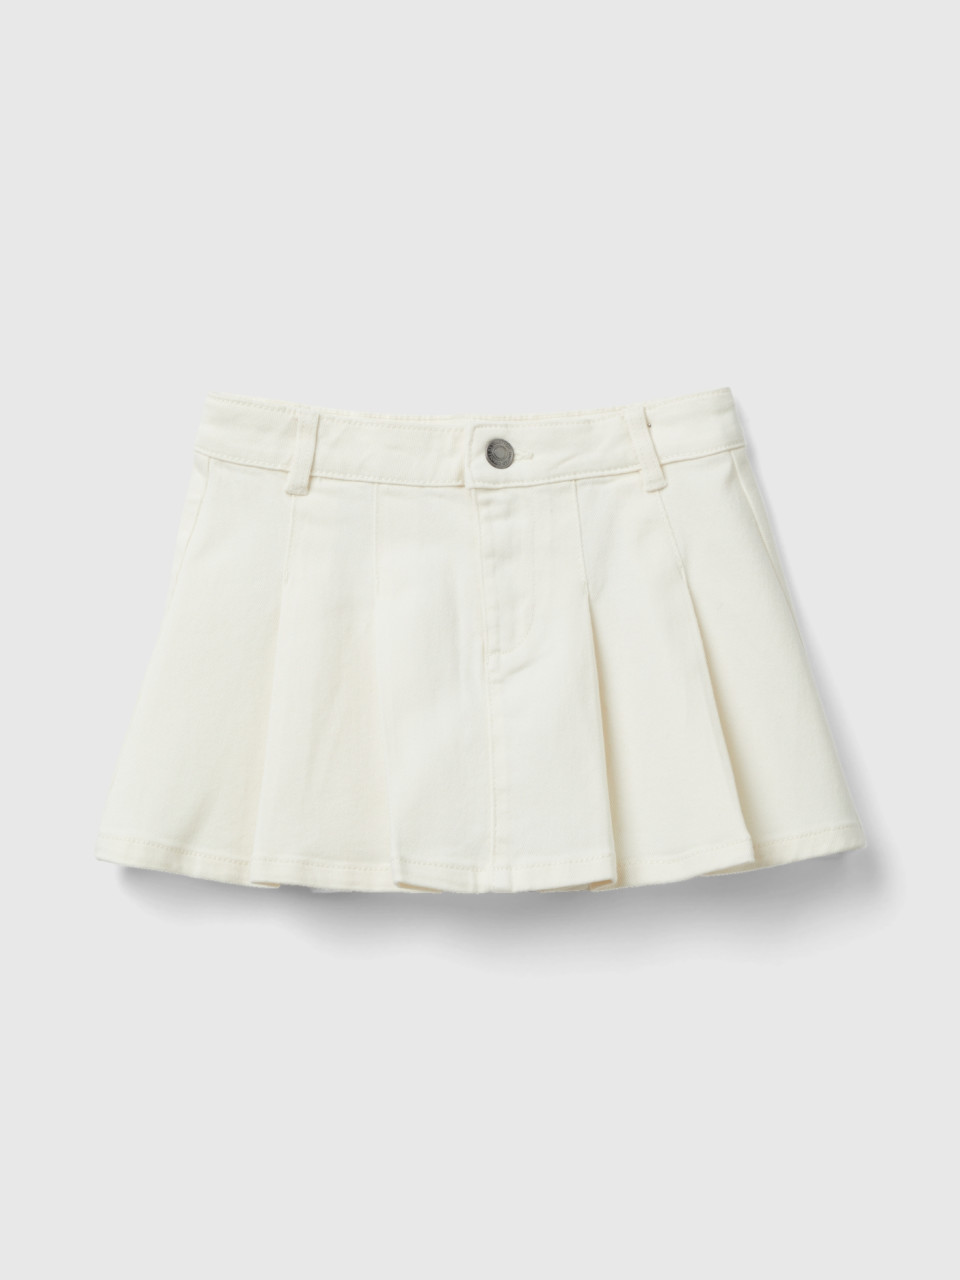 Benetton, Pleated Miniskirt, Creamy White, Kids